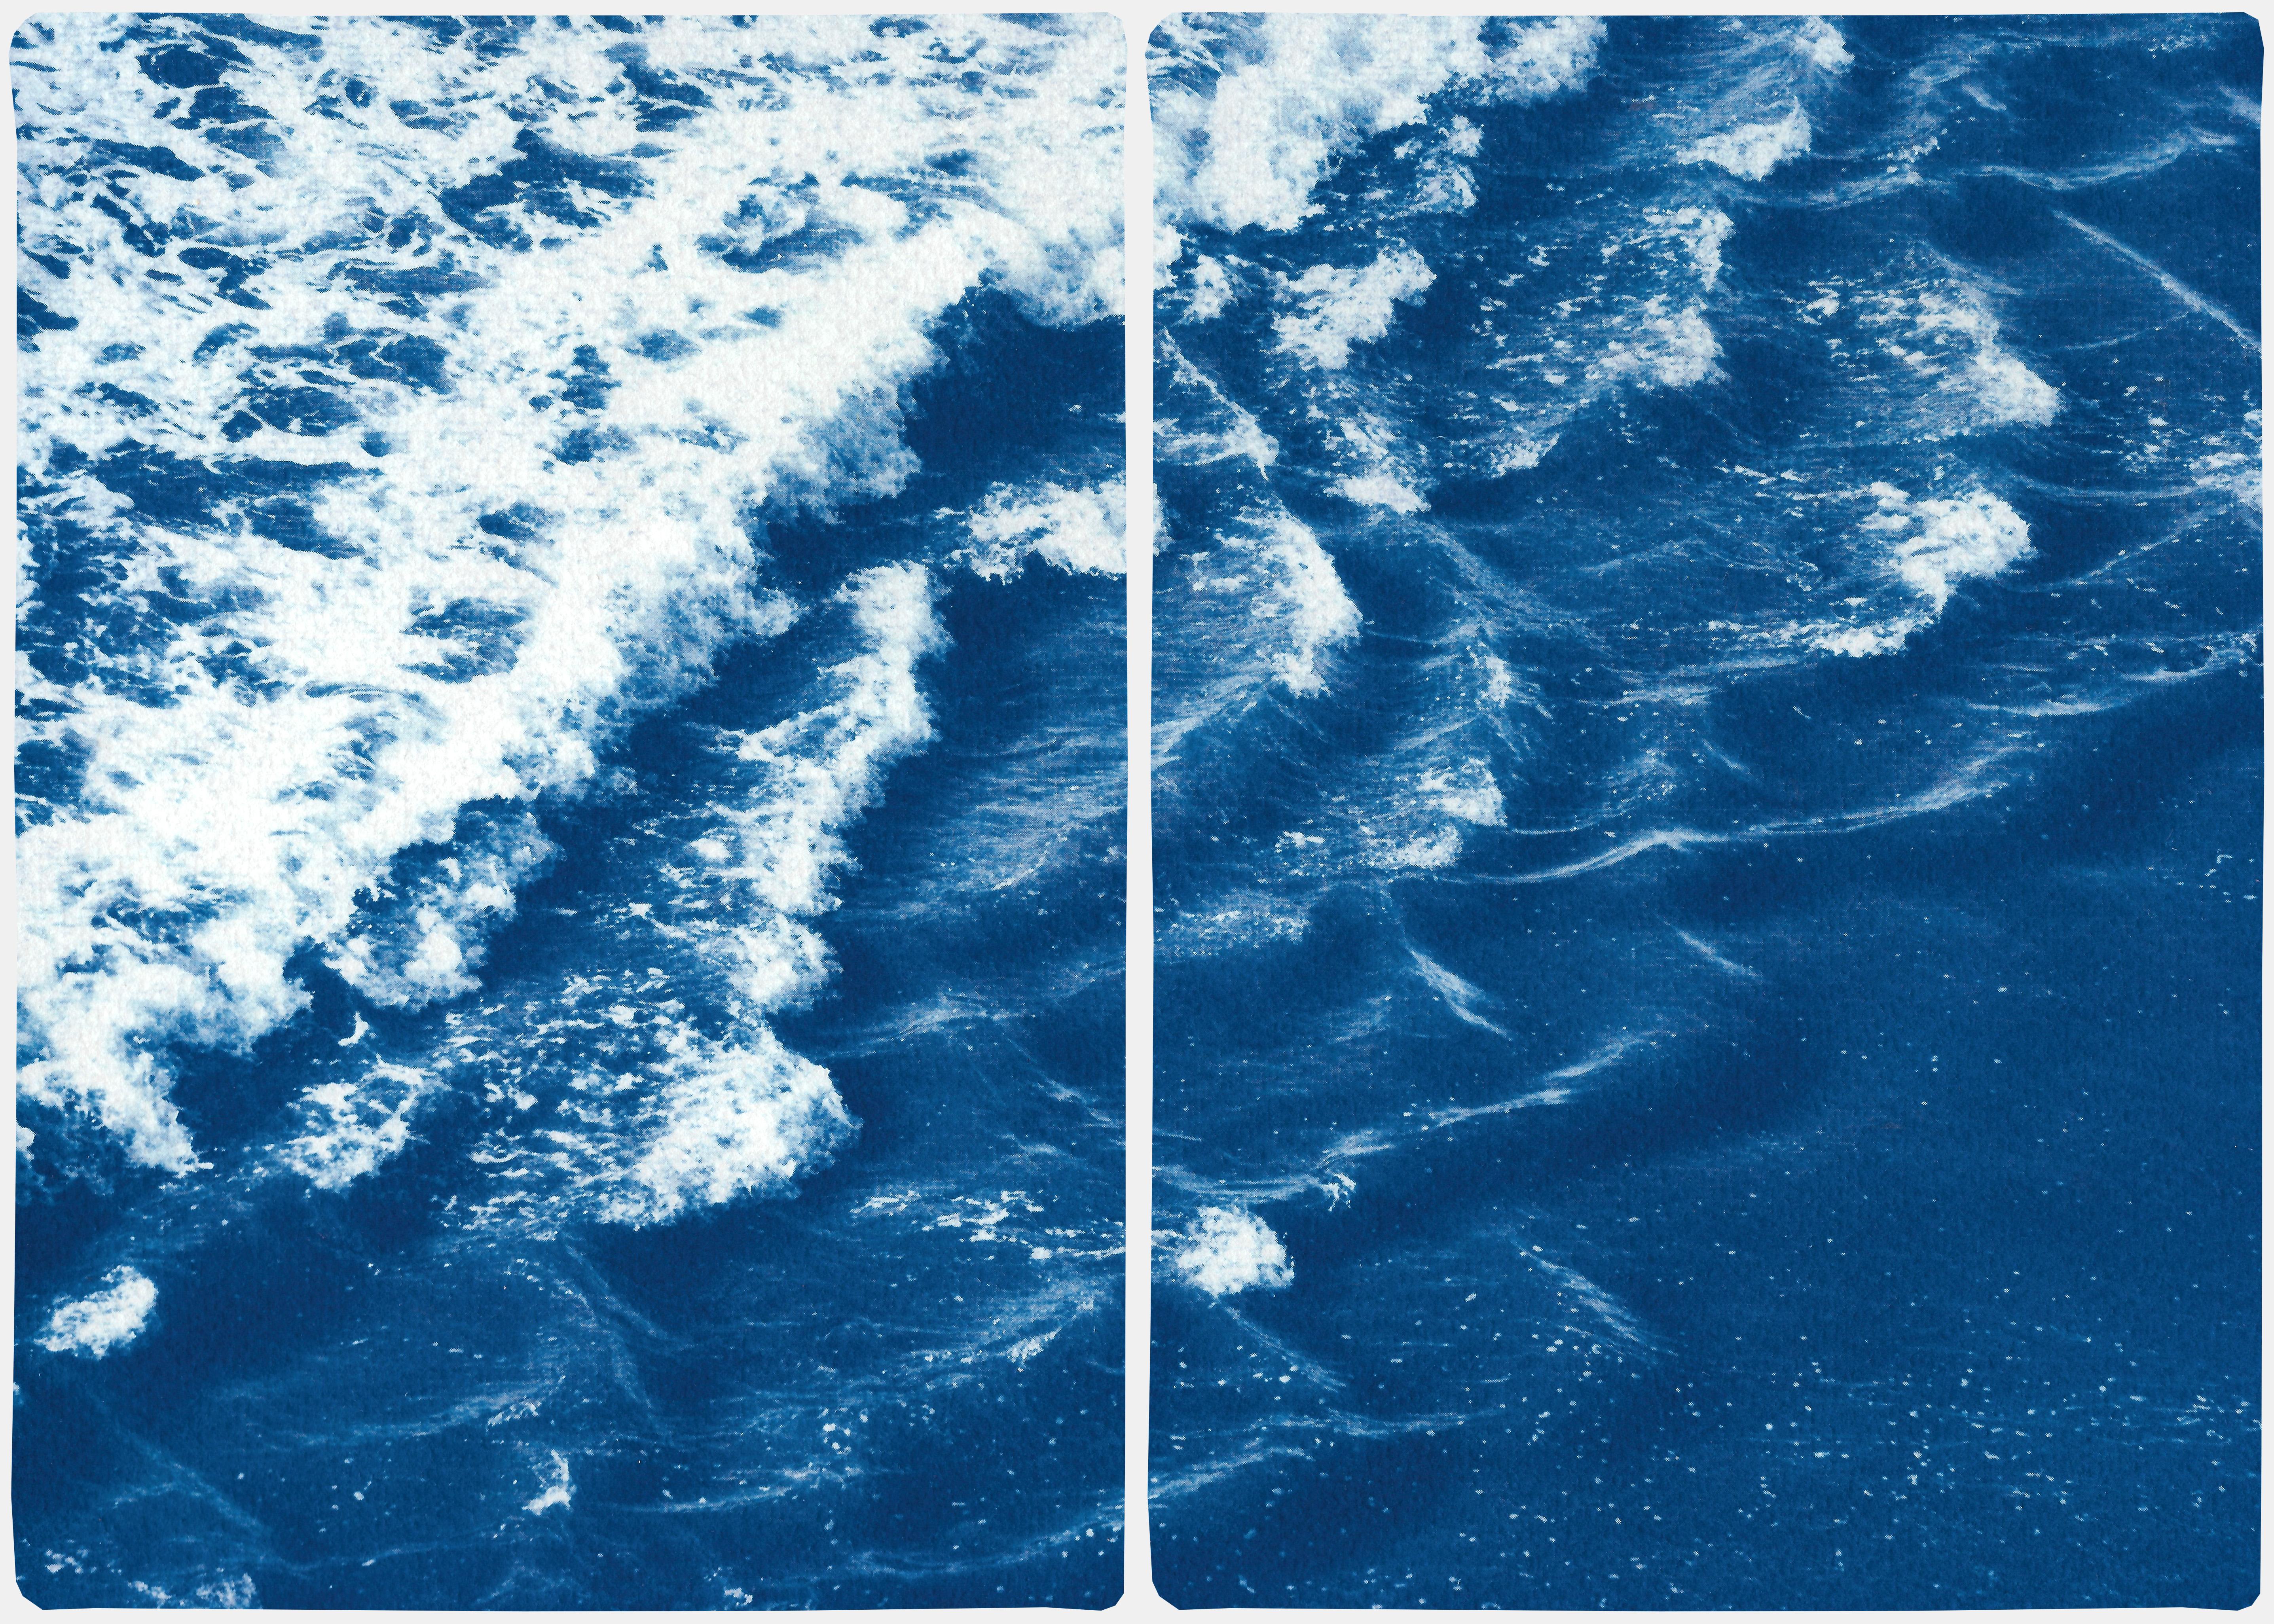 Kind of Cyan Landscape Art - Rolling Waves off Sidney, Seascape Diptych Cyanotype, Australian Coast, Indigo